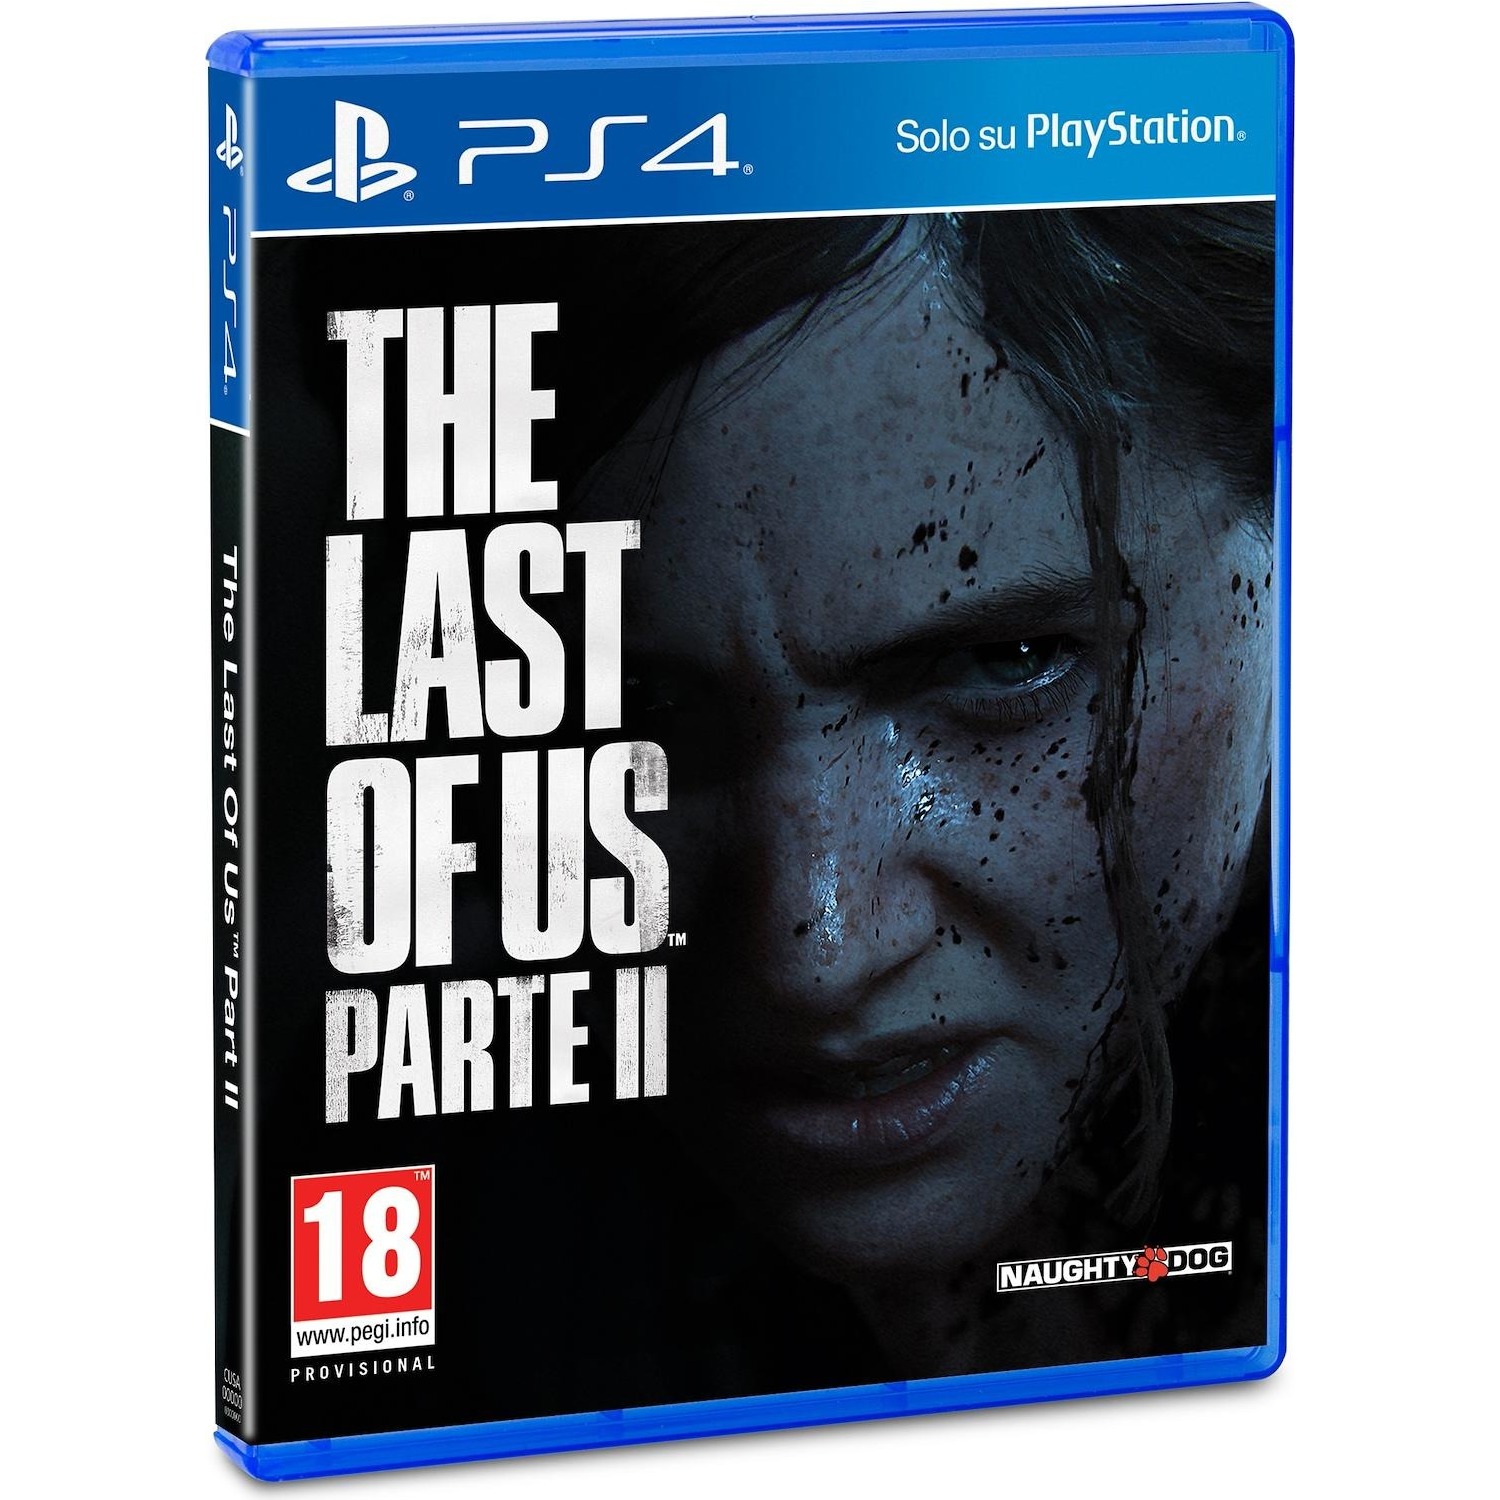 Immagine per Gioco PS4 The Last Of Us parte II da DIMOStore